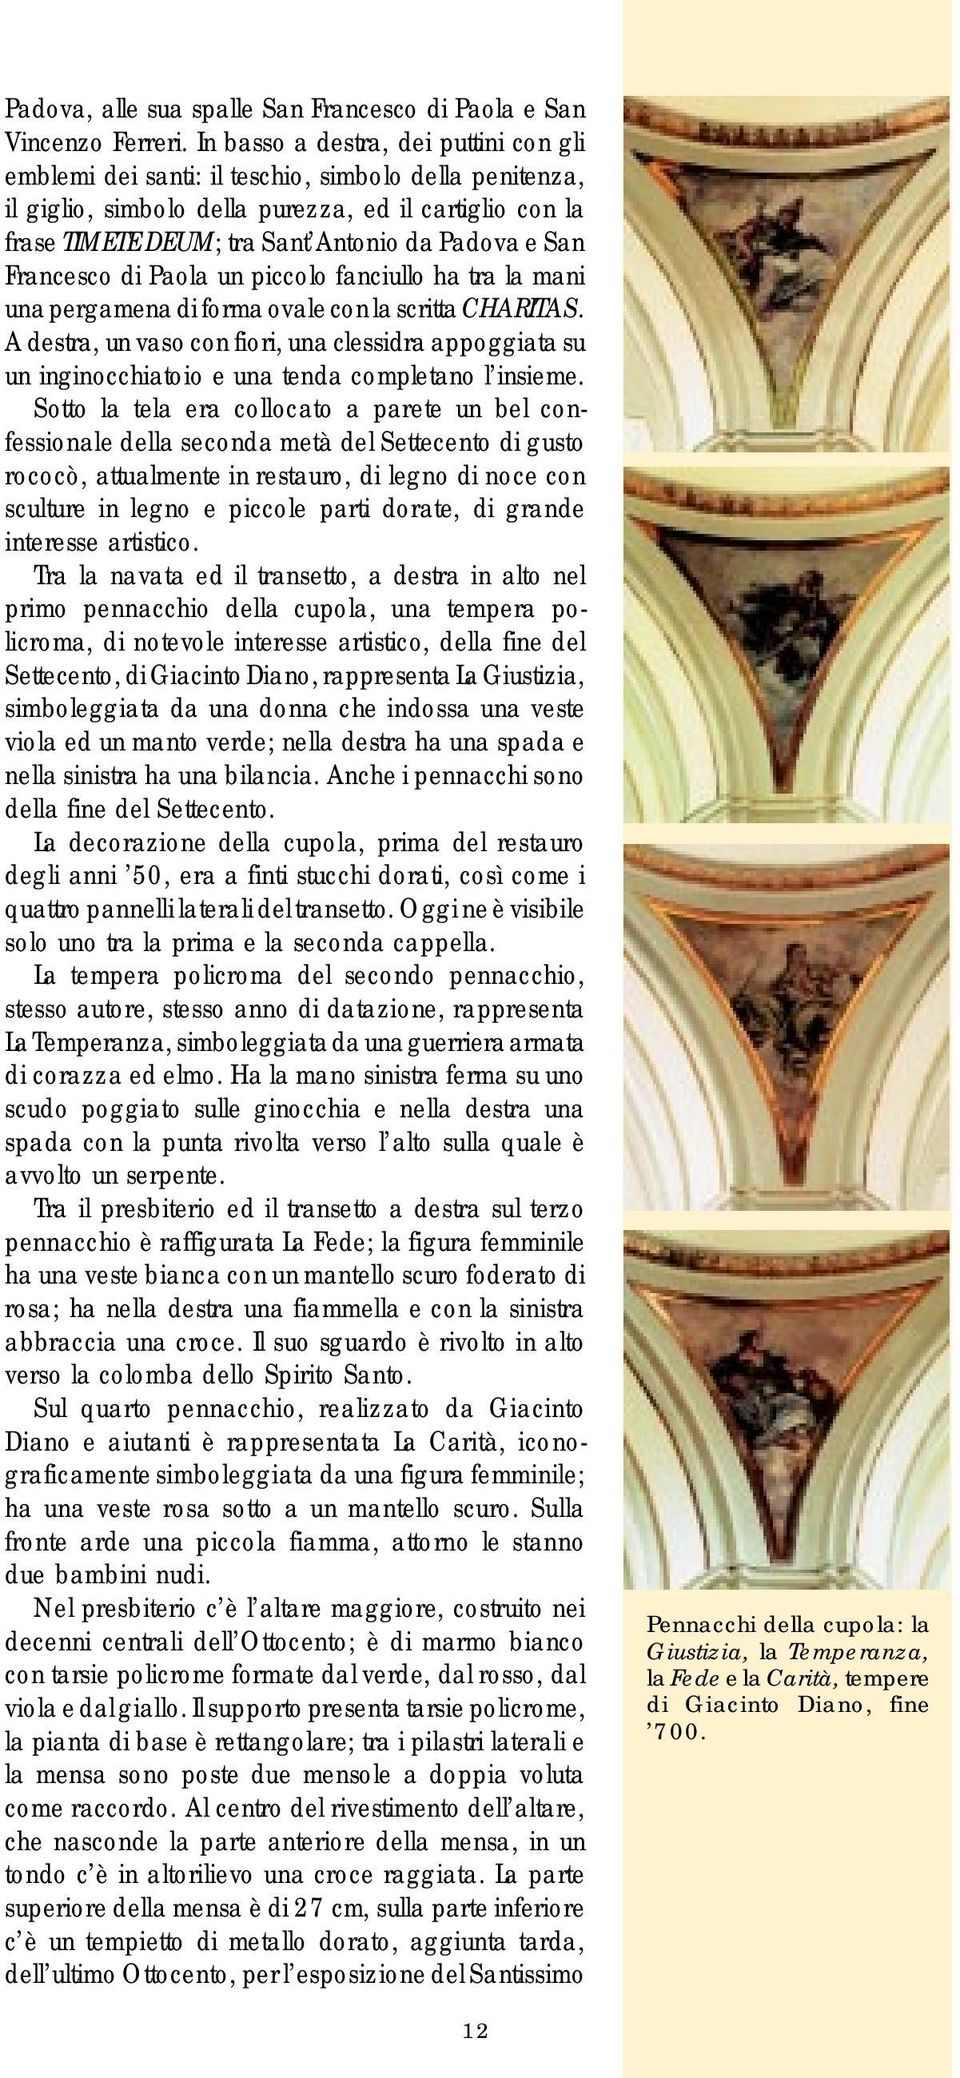 San Francesco di Paola un piccolo fanciullo ha tra la mani una pergamena di forma ovale con la scritta CHARITAS.